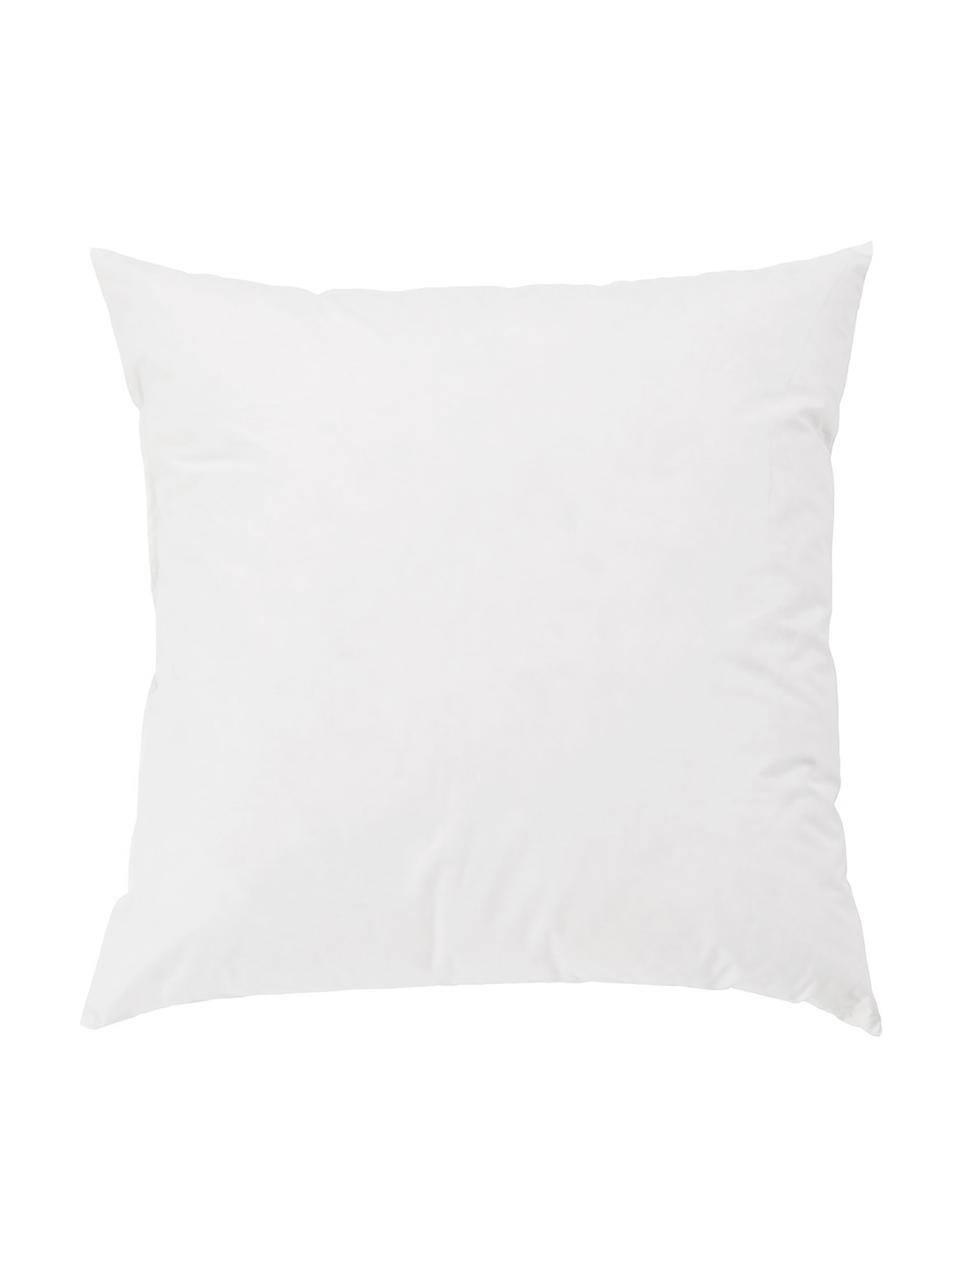 Wypełnienie poduszki dekoracyjnej Komfort, 40 x 40, Biały, S 40 x D 40 cm